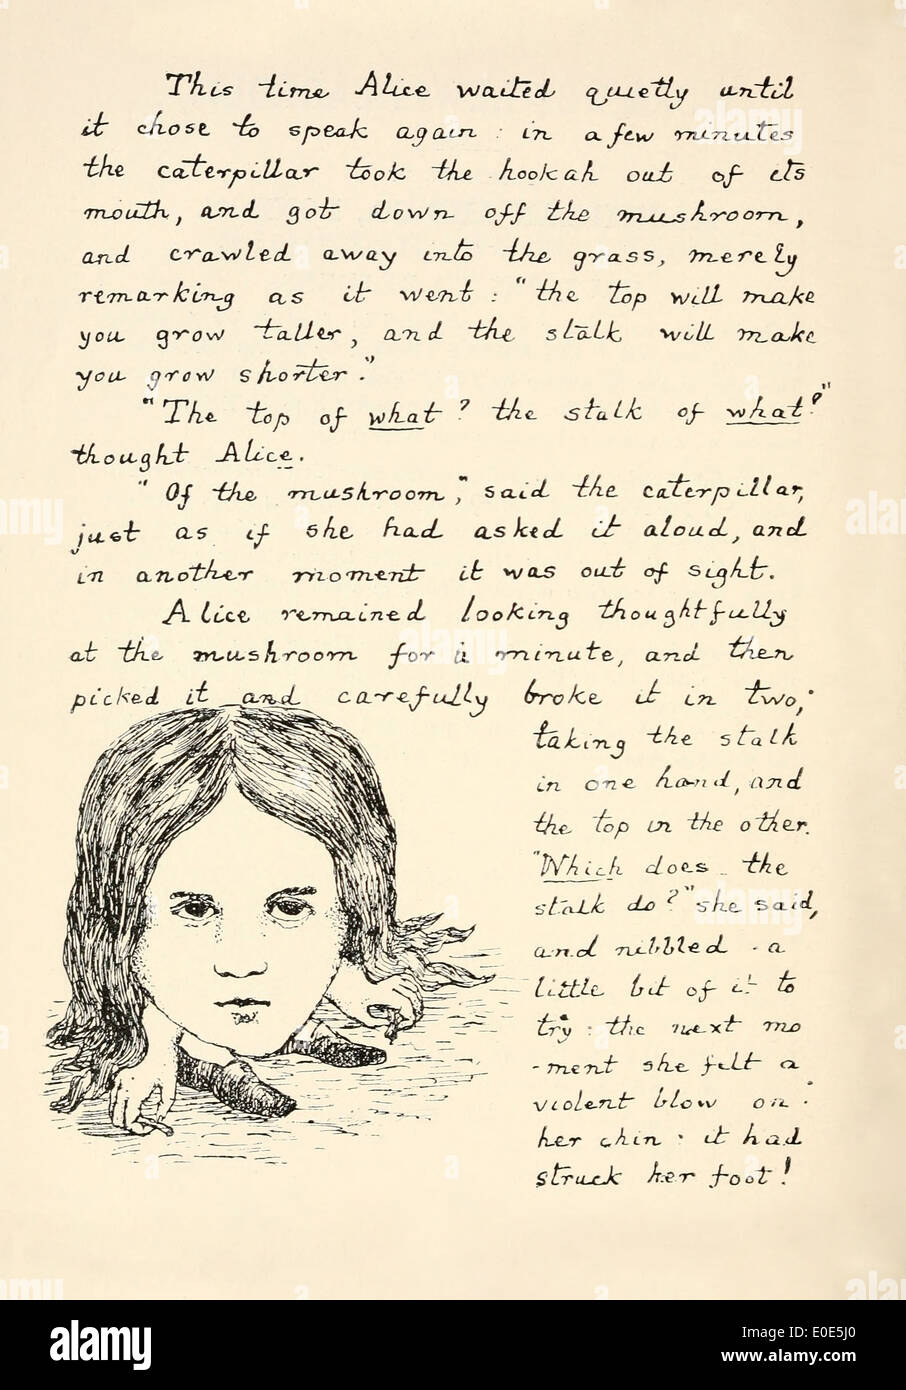 Pagina del manoscritto originale per Alice nel paese delle meraviglie,  manoscritti e illustrata nel 1864 da Lewis Carroll (1832-1898). Il testo  racconta di Alice incontro con i Caterpillar e la illustrazione di